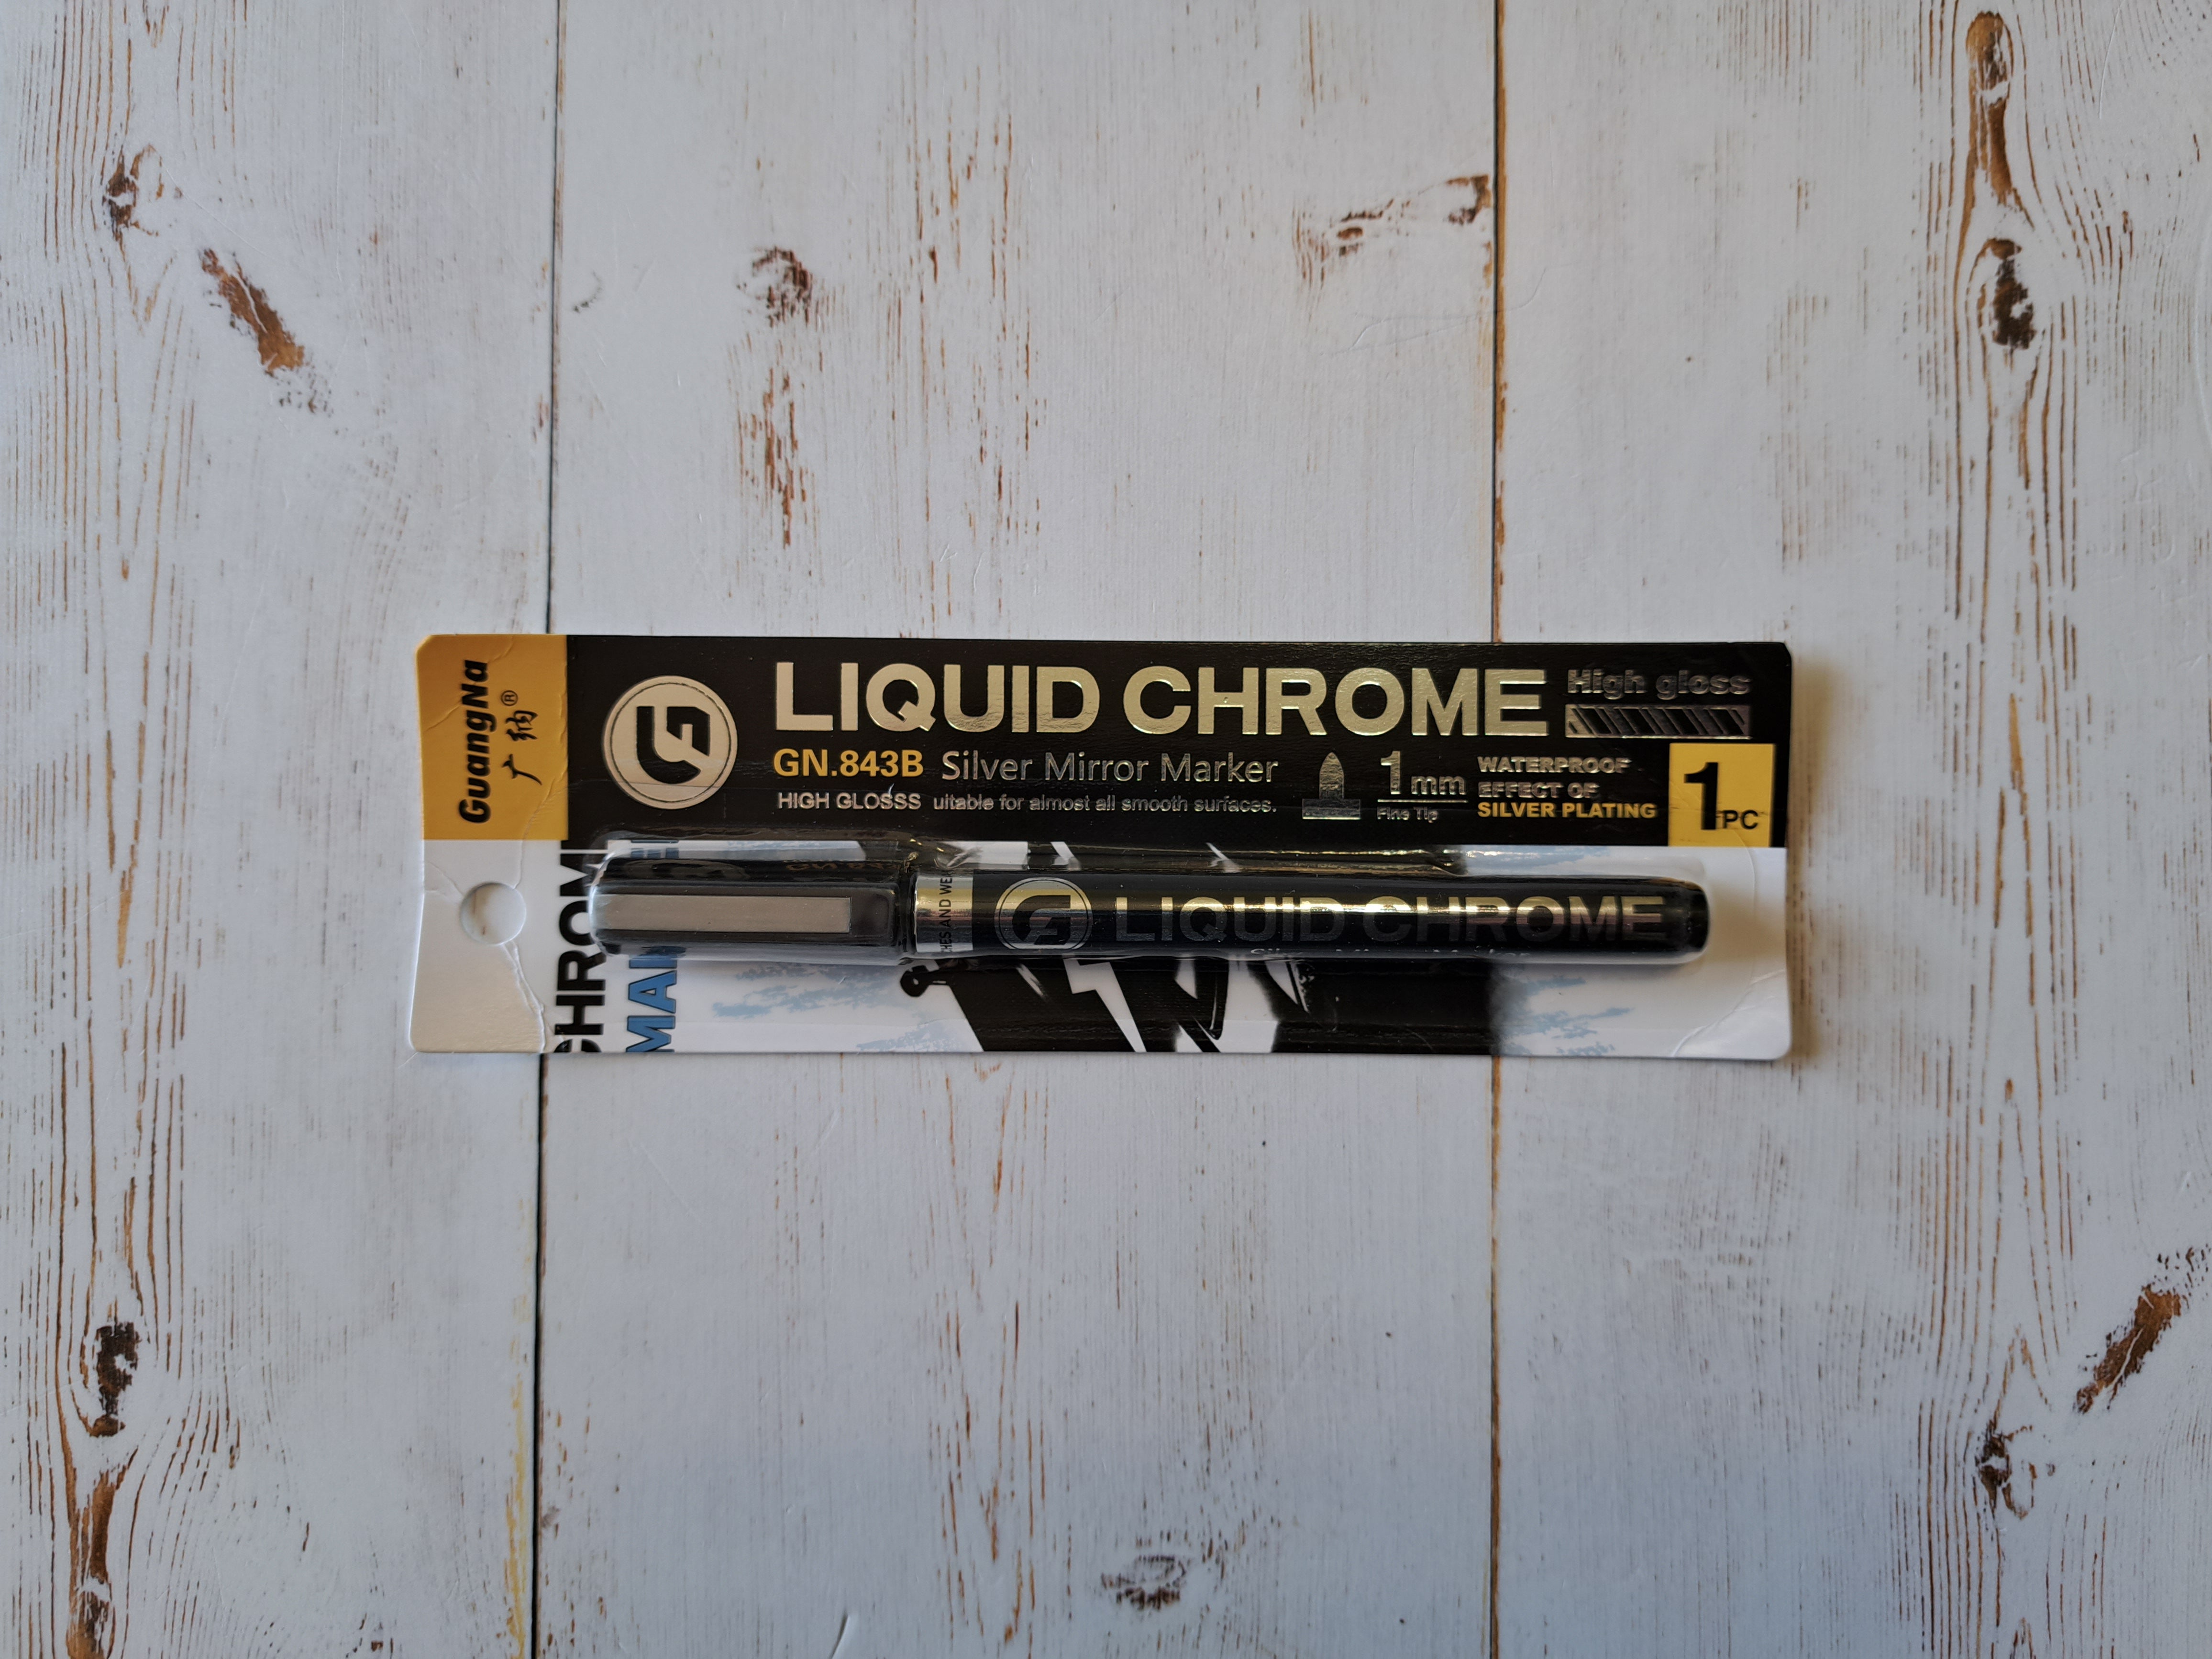 1mm - Liquid Chrome Marker - Each